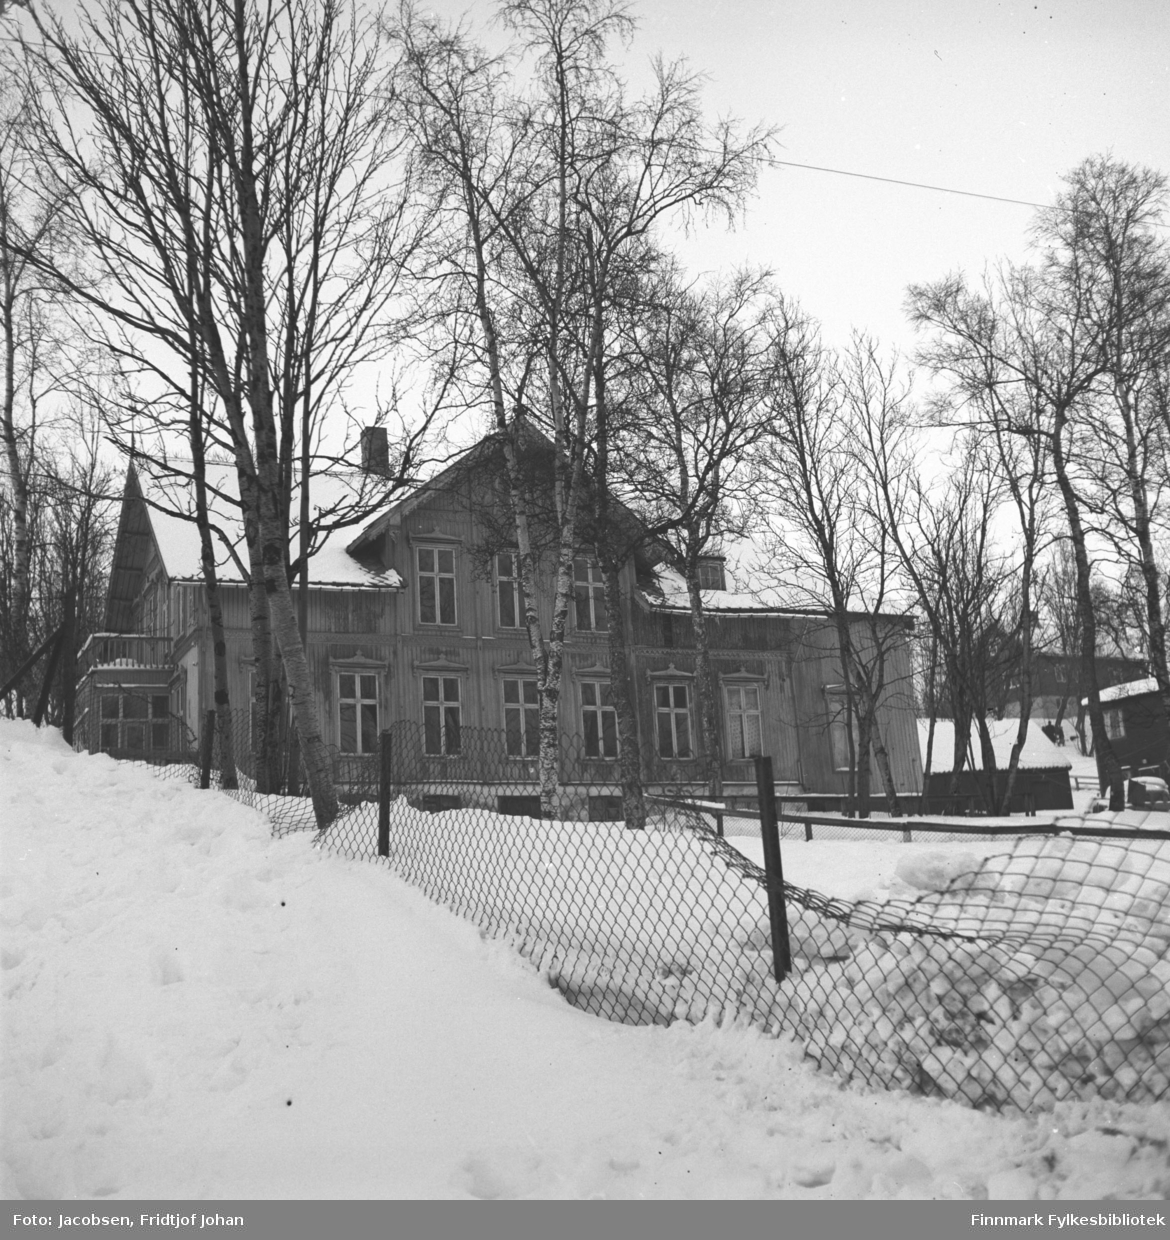 Villa Gyllenborg i Skolegata, i gamle Tromsø. Huset ble revet ca. 1970. Det hadde kallenavnet "Flottenberg" pga. tidligere eier som gikk konkurs. 